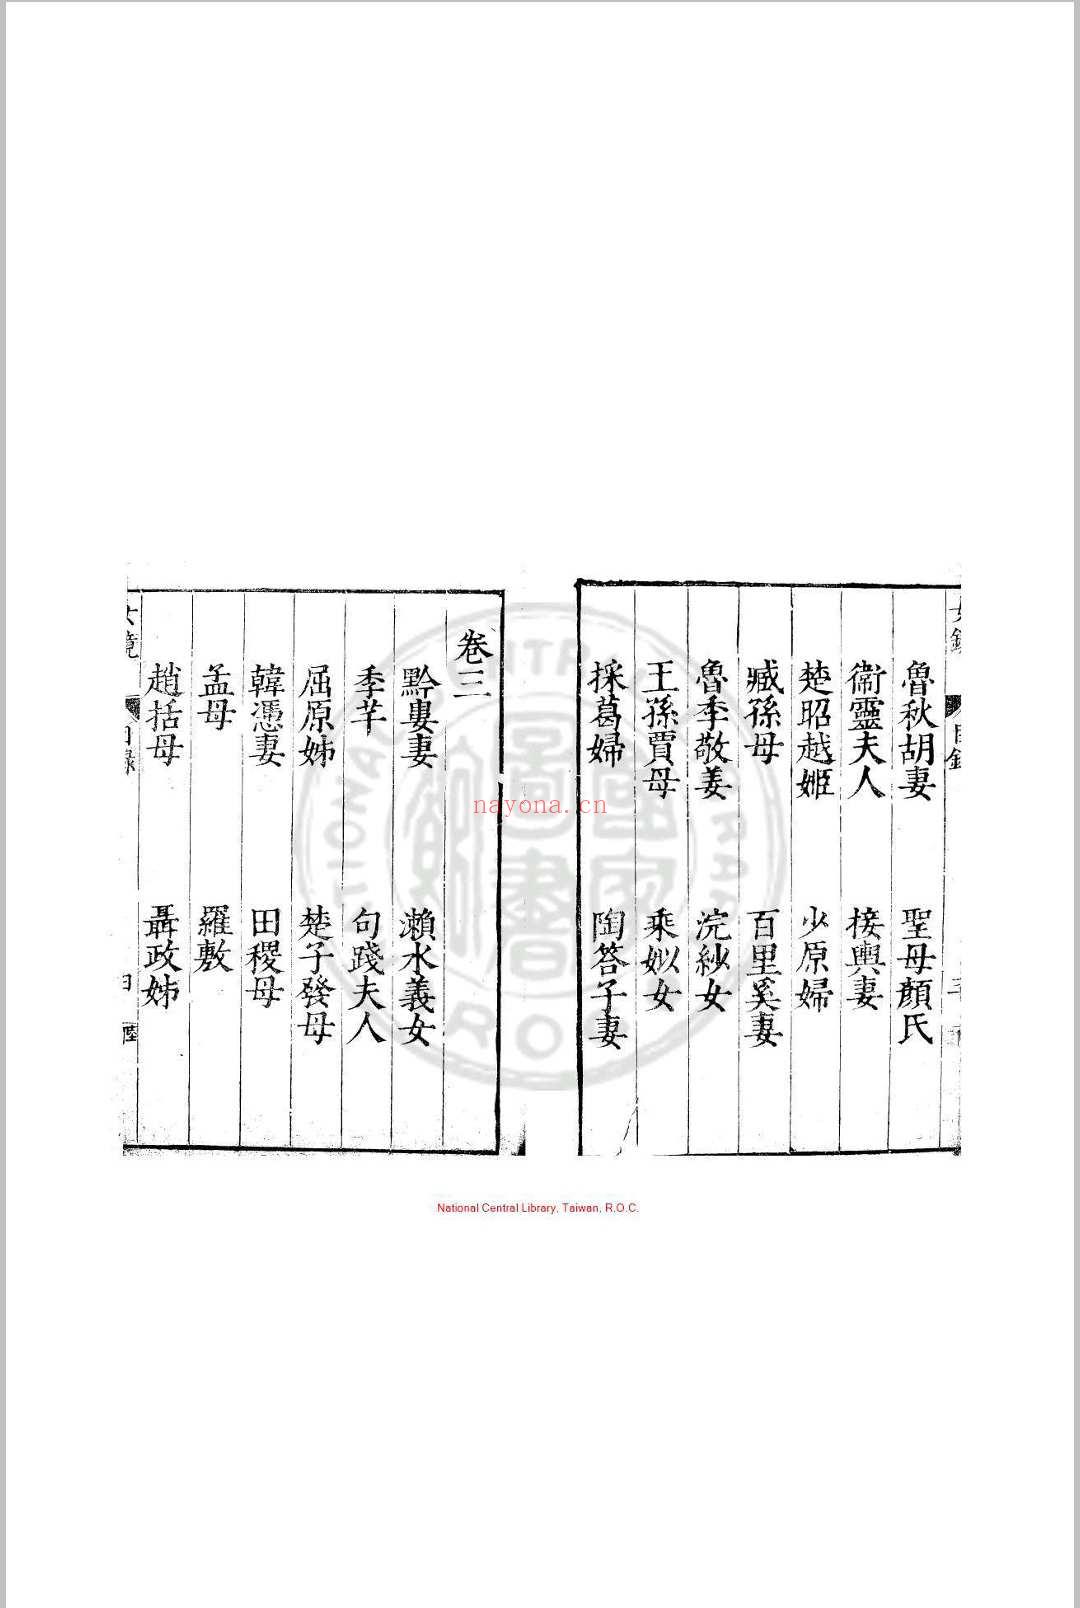 女镜 夏树芳 明万历间(1573-1620)原刊本